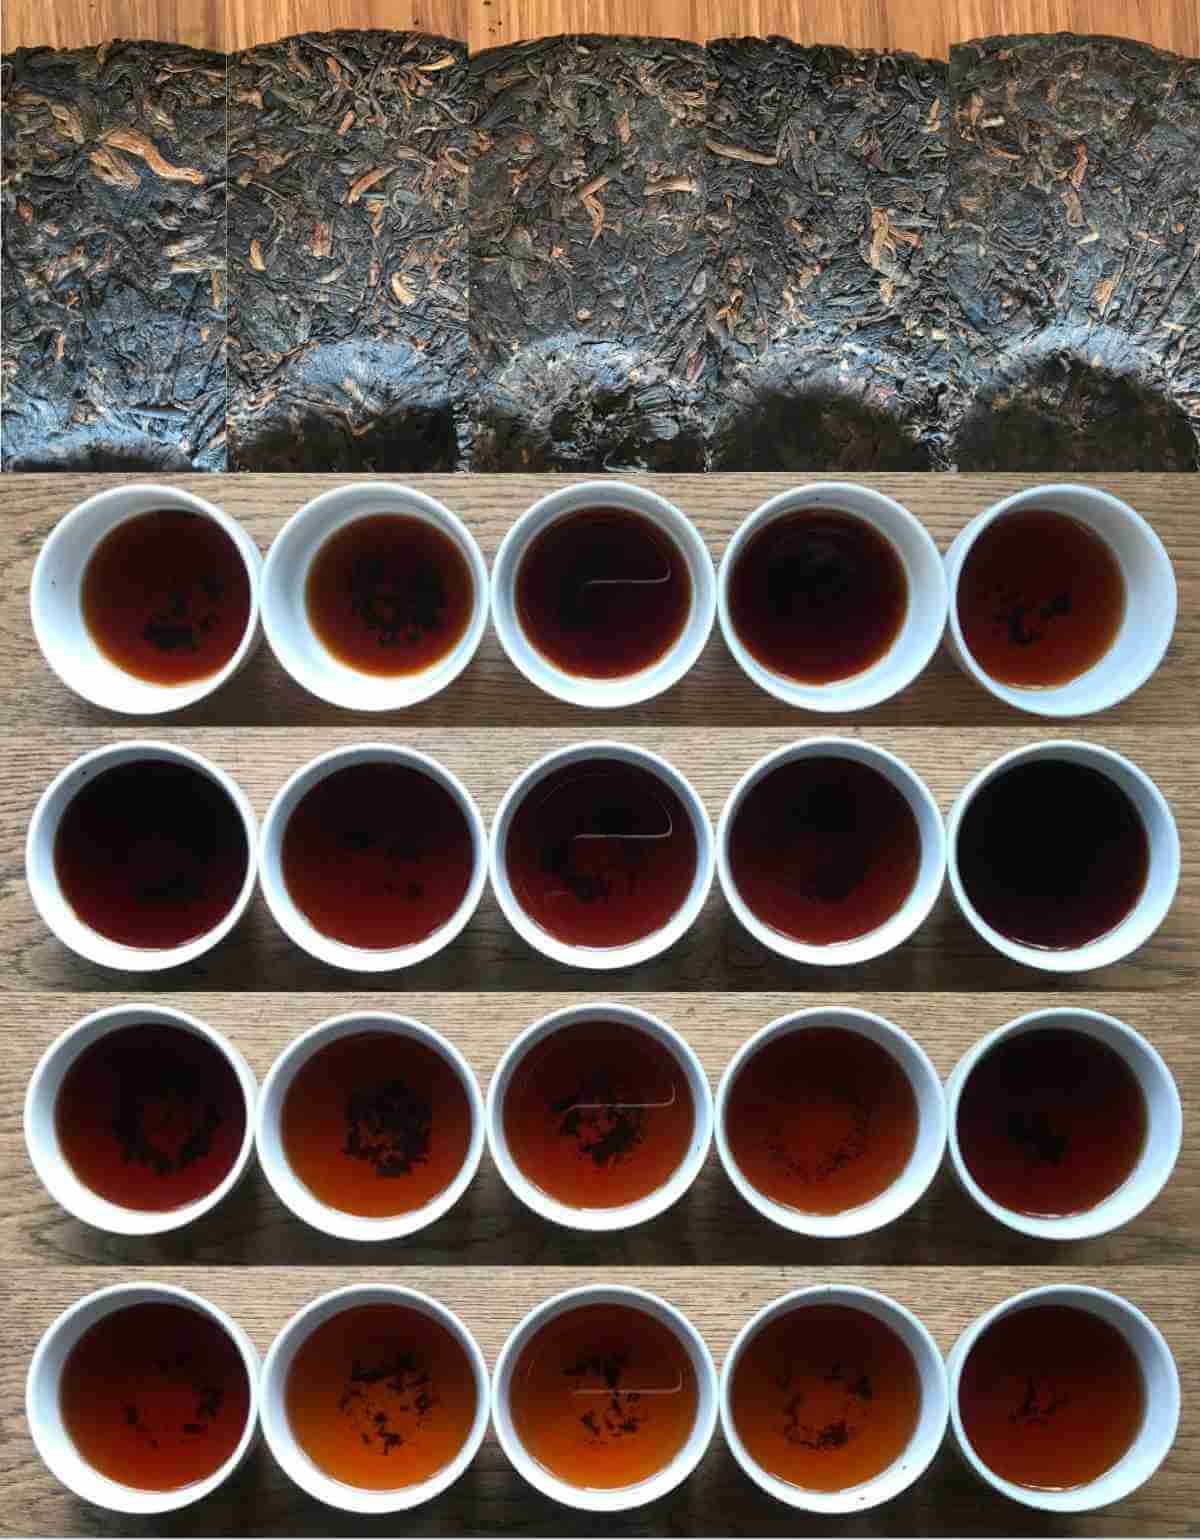 discos de té pu erh fermentado